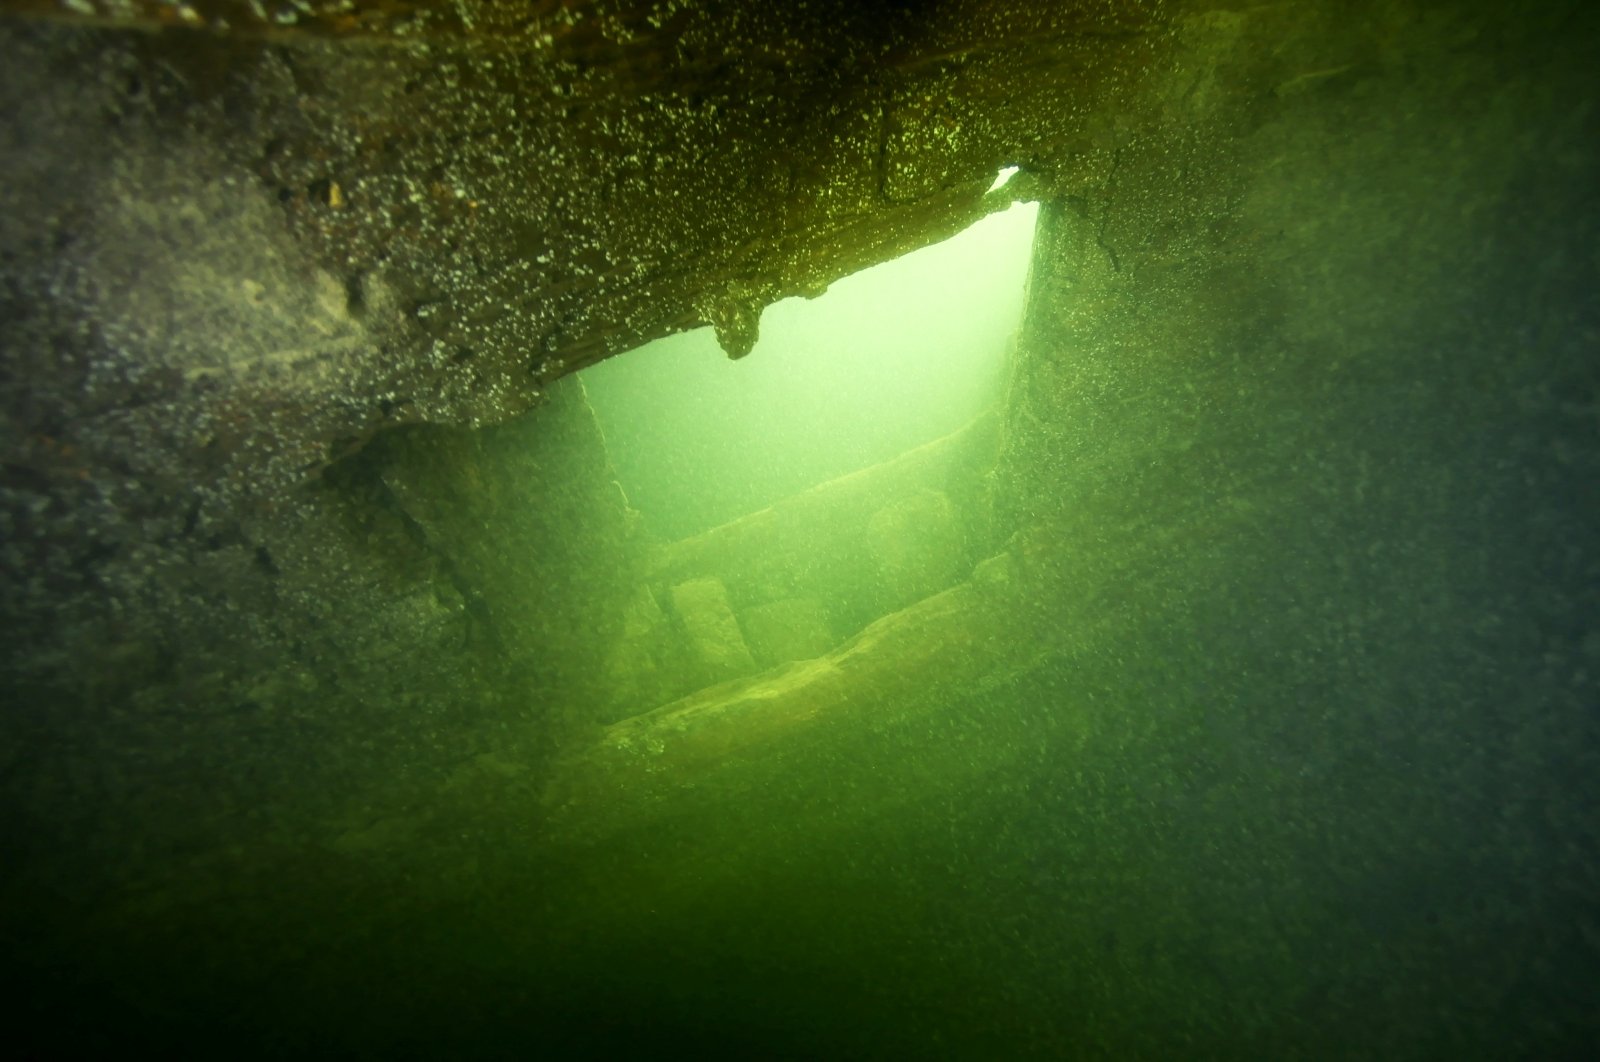 Arkeolog menemukan kapal perang yang hilang dari abad ke-17 di Swedia